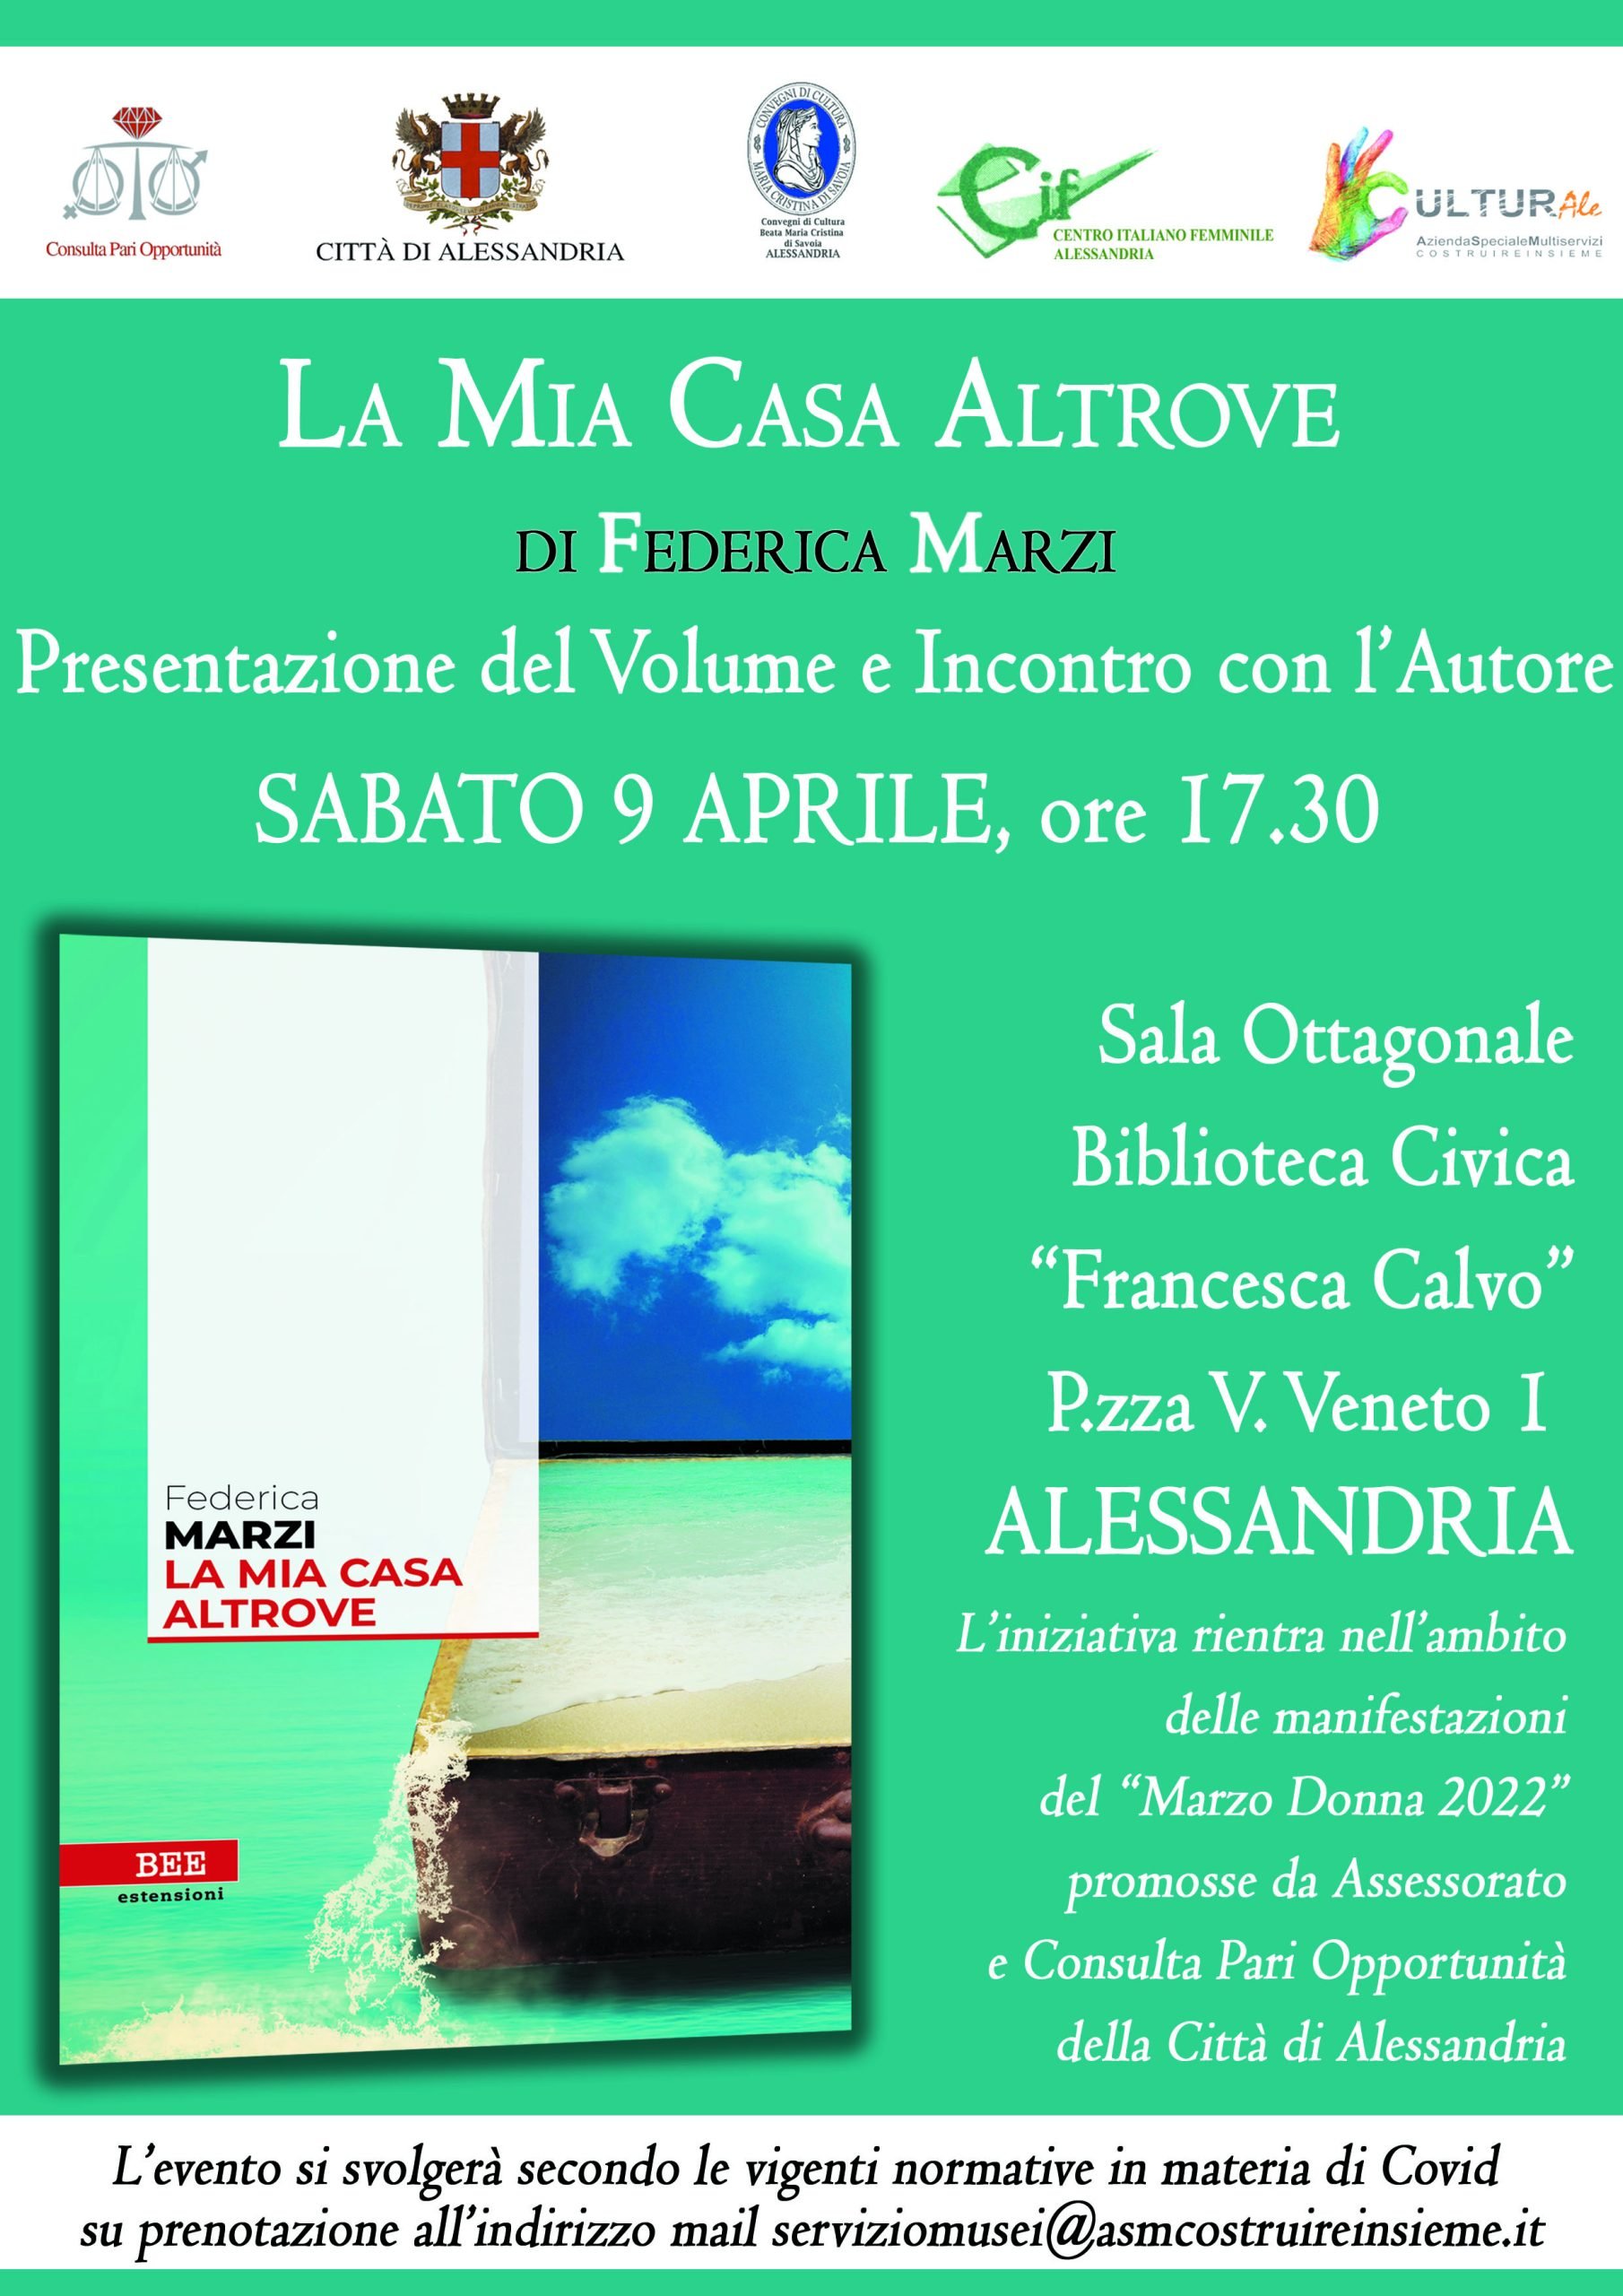 Il 9 aprile Federica Marzi presenta il romanzo “La Mia Casa Altrove